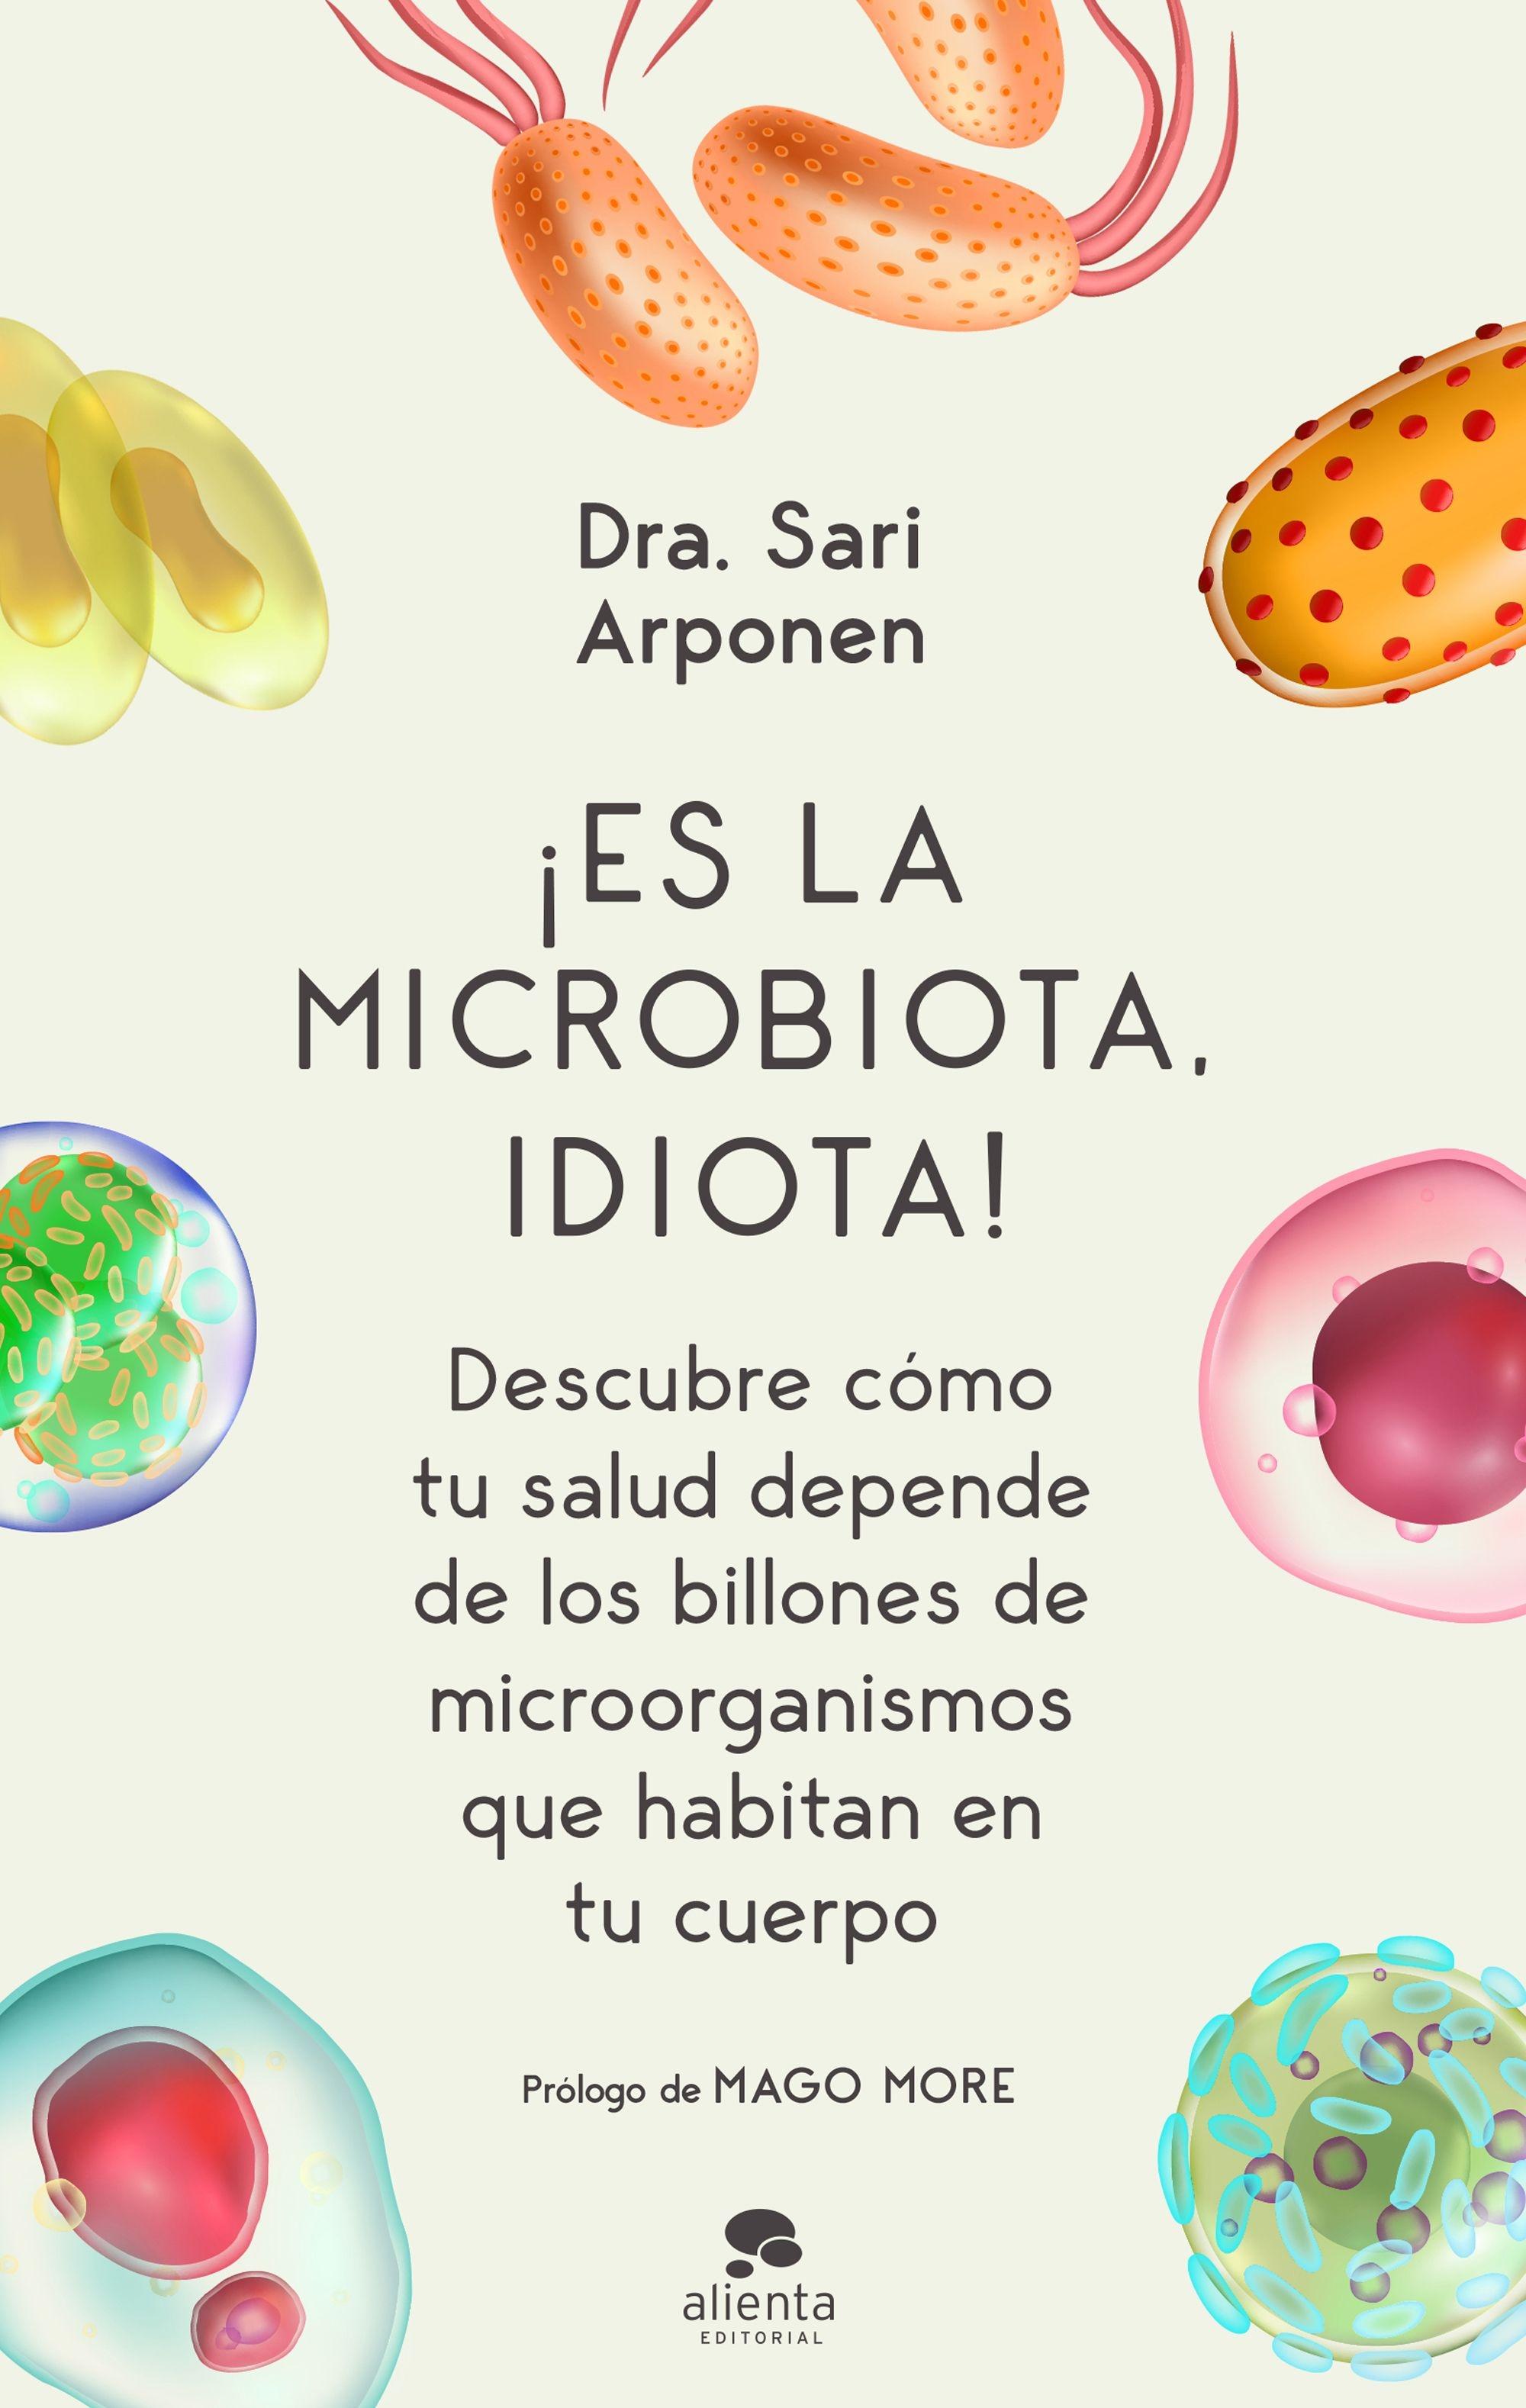 ¡Es la microbiota, idiota! "Descubre cómo tu salud depende de los billones de microorganismos que ha". 